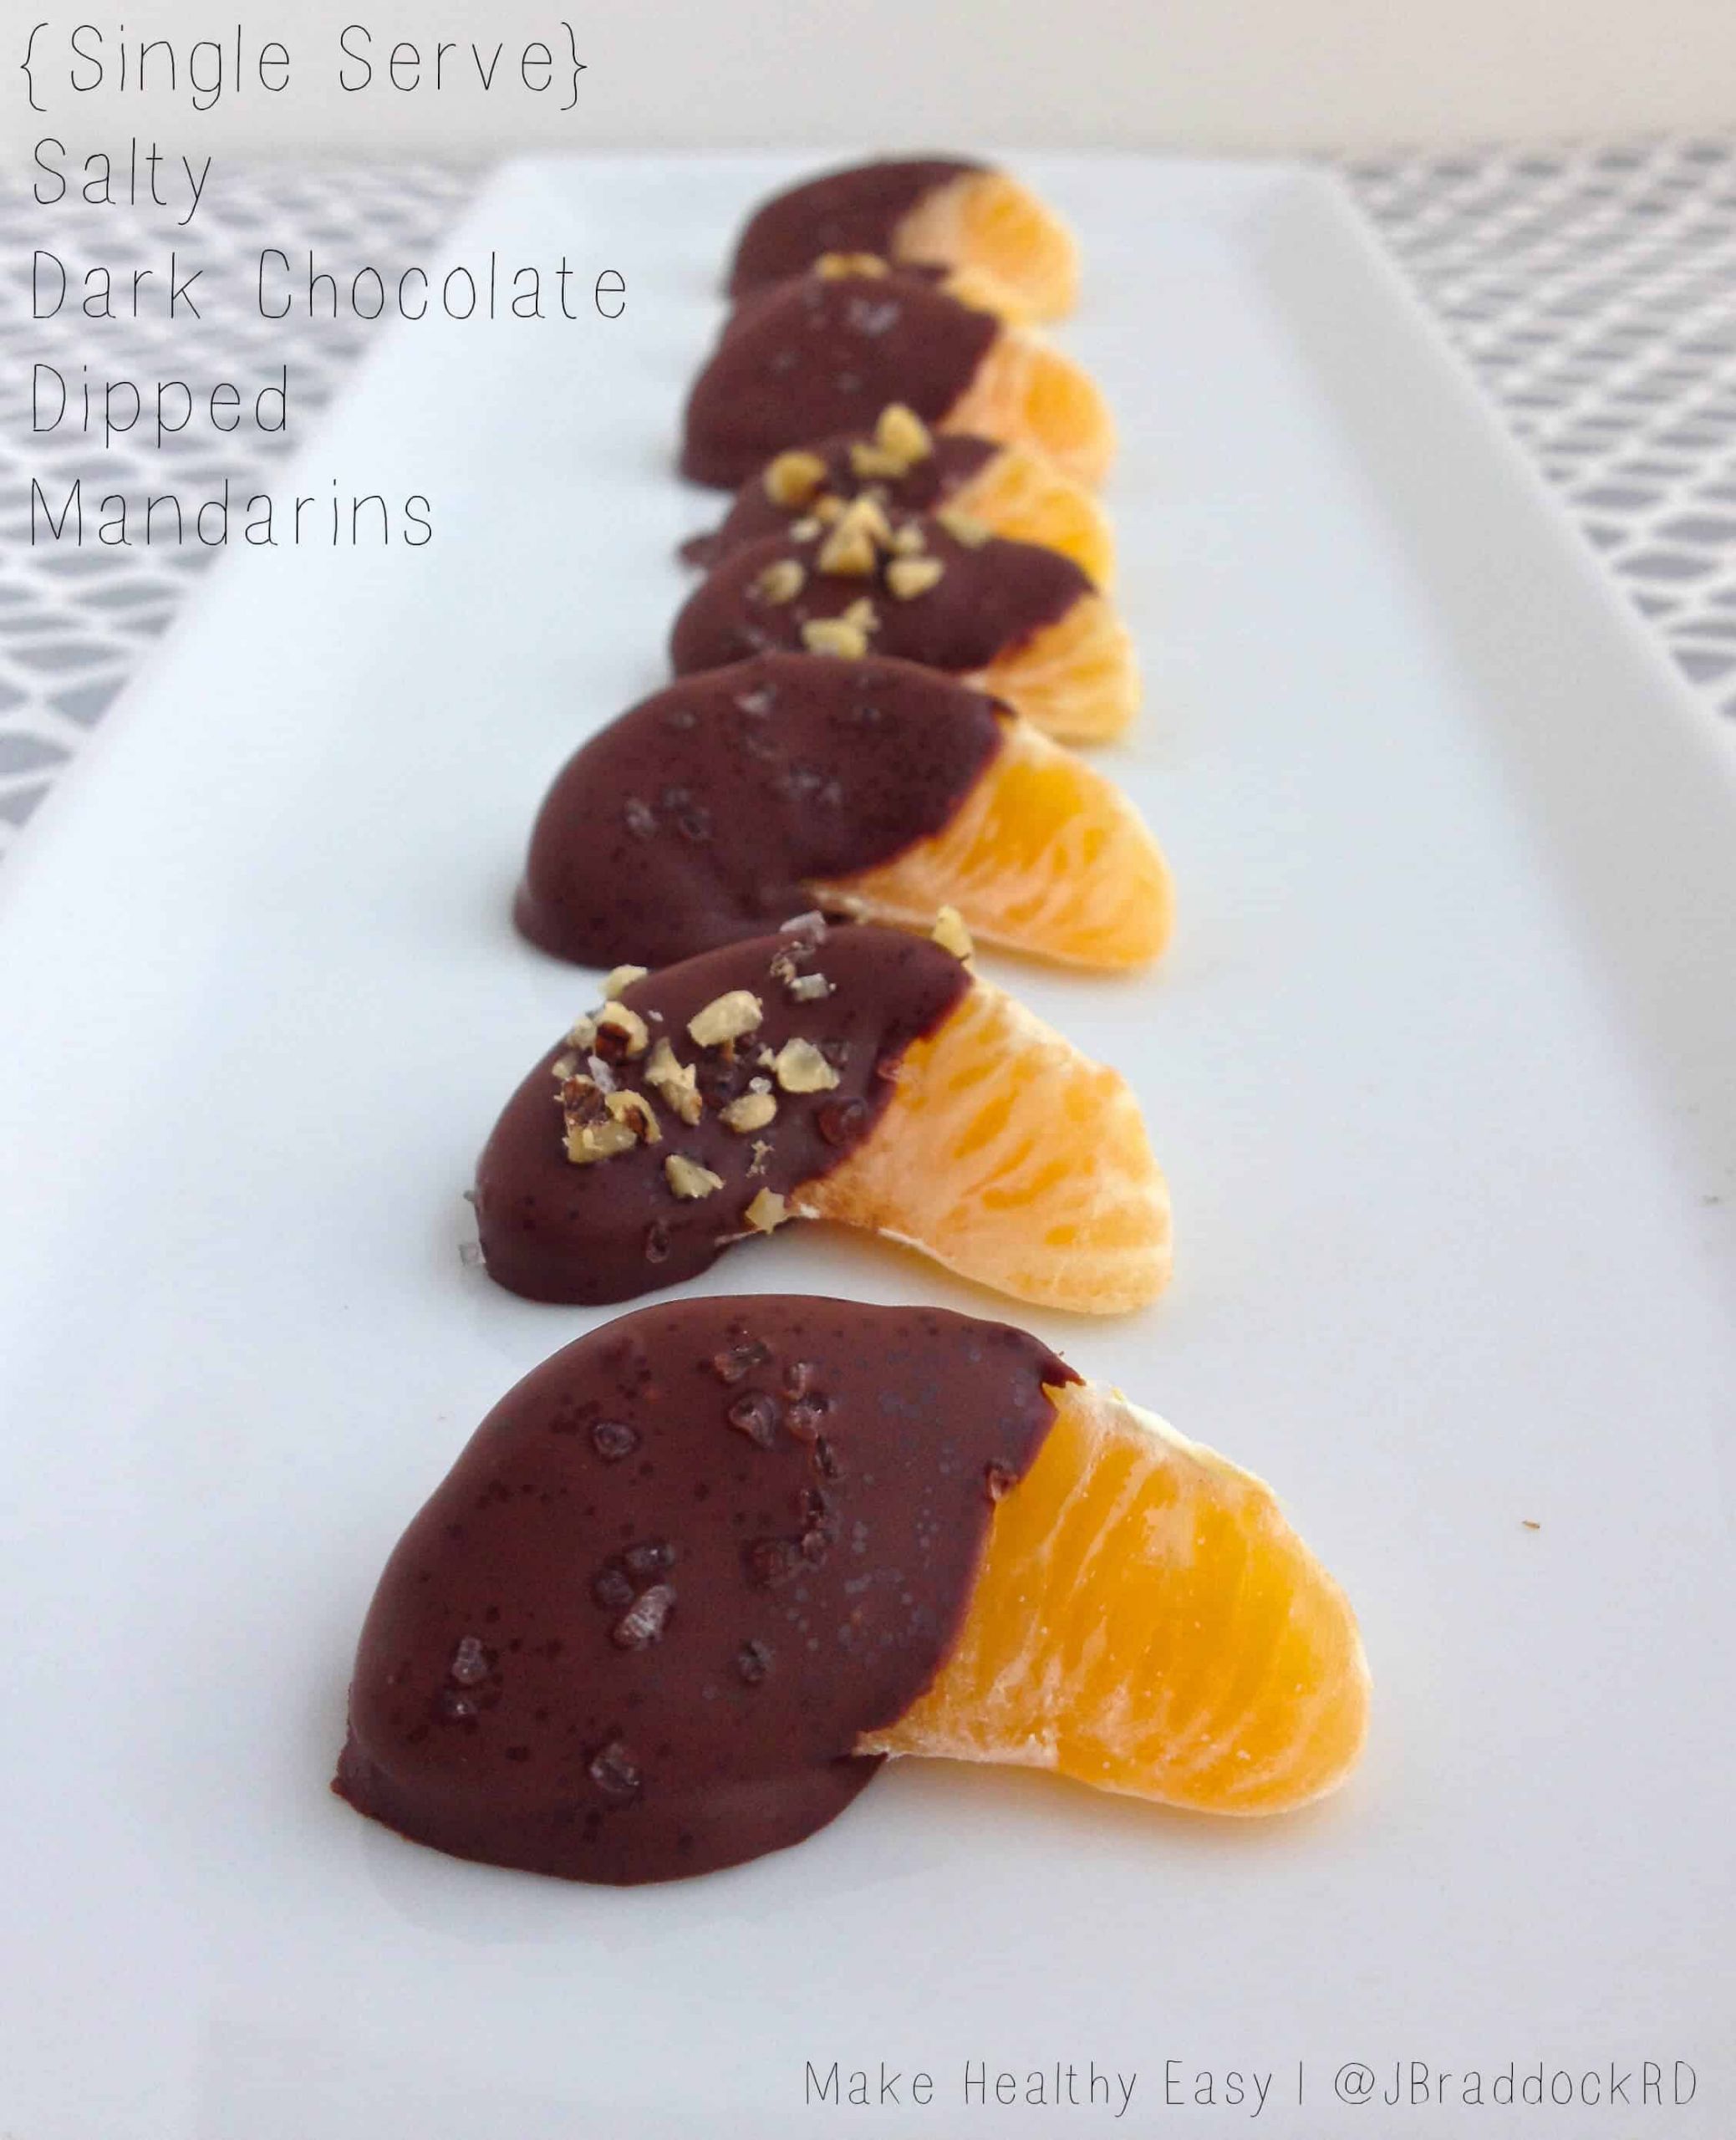 Single Serve Desserts
 Single Serve Desserts Salty Dark Chocolate Halos